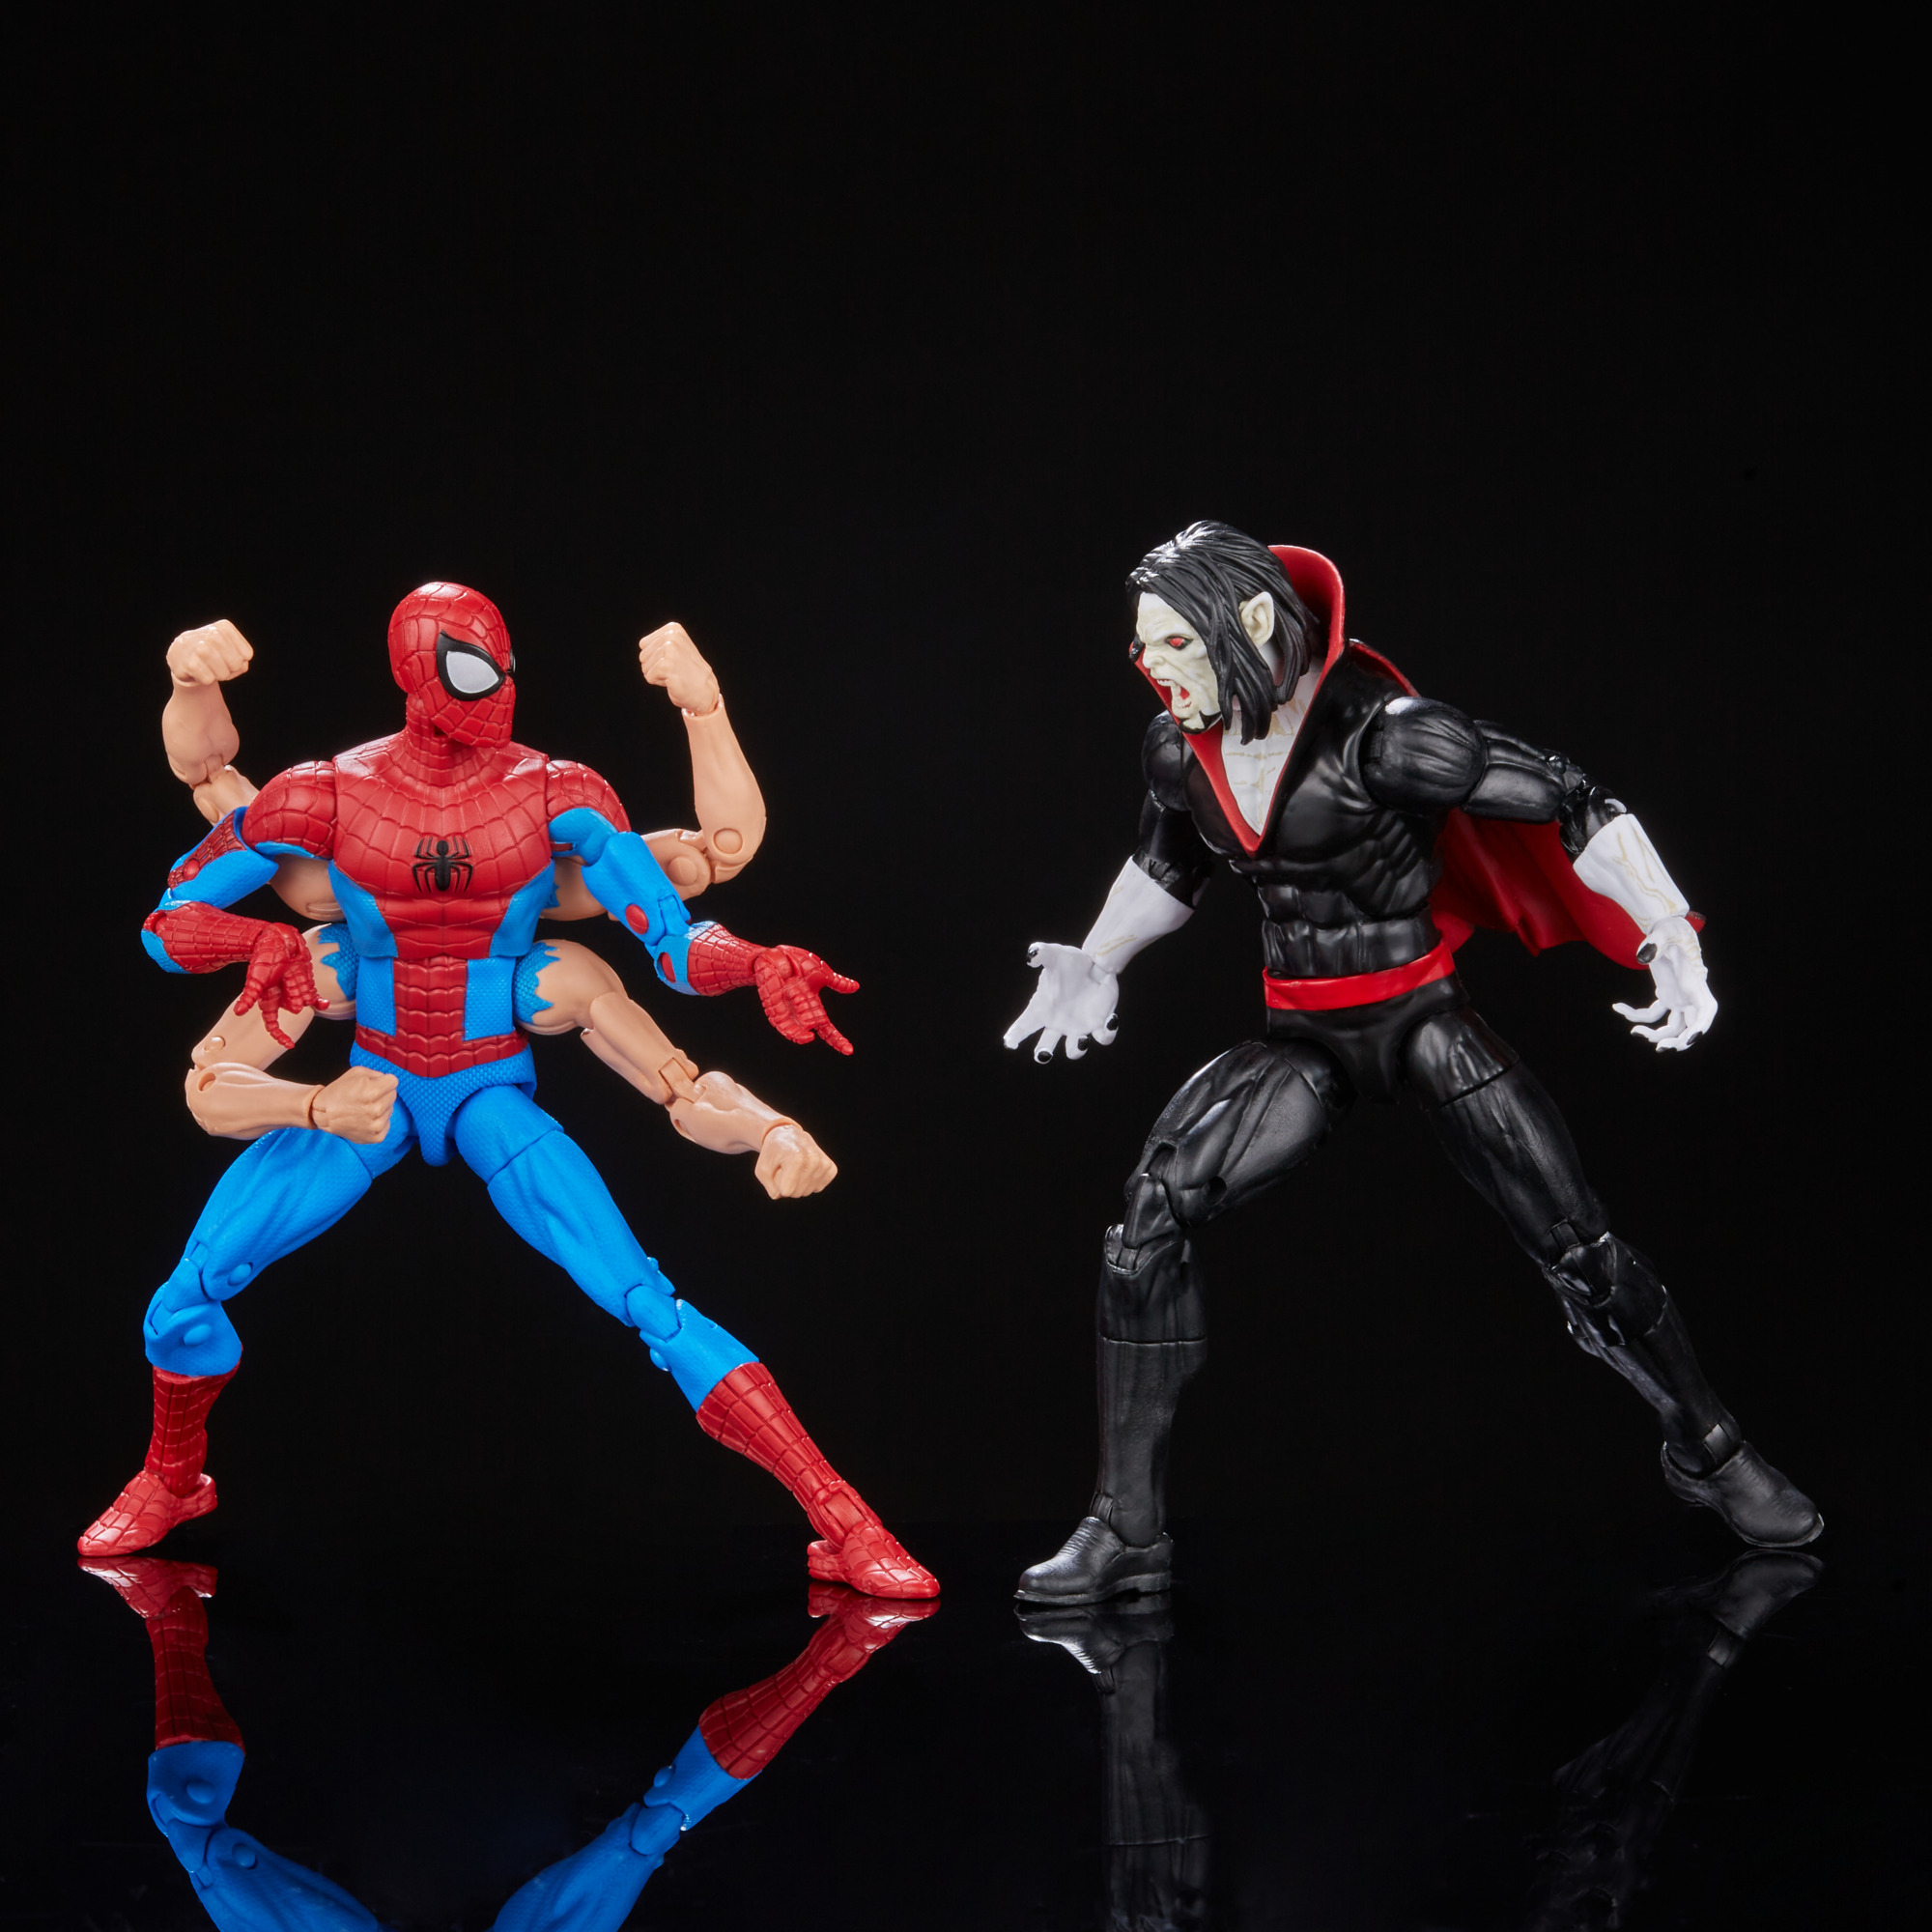 Marvel Legends: Spider-Man & Morbius 2-pack revealed